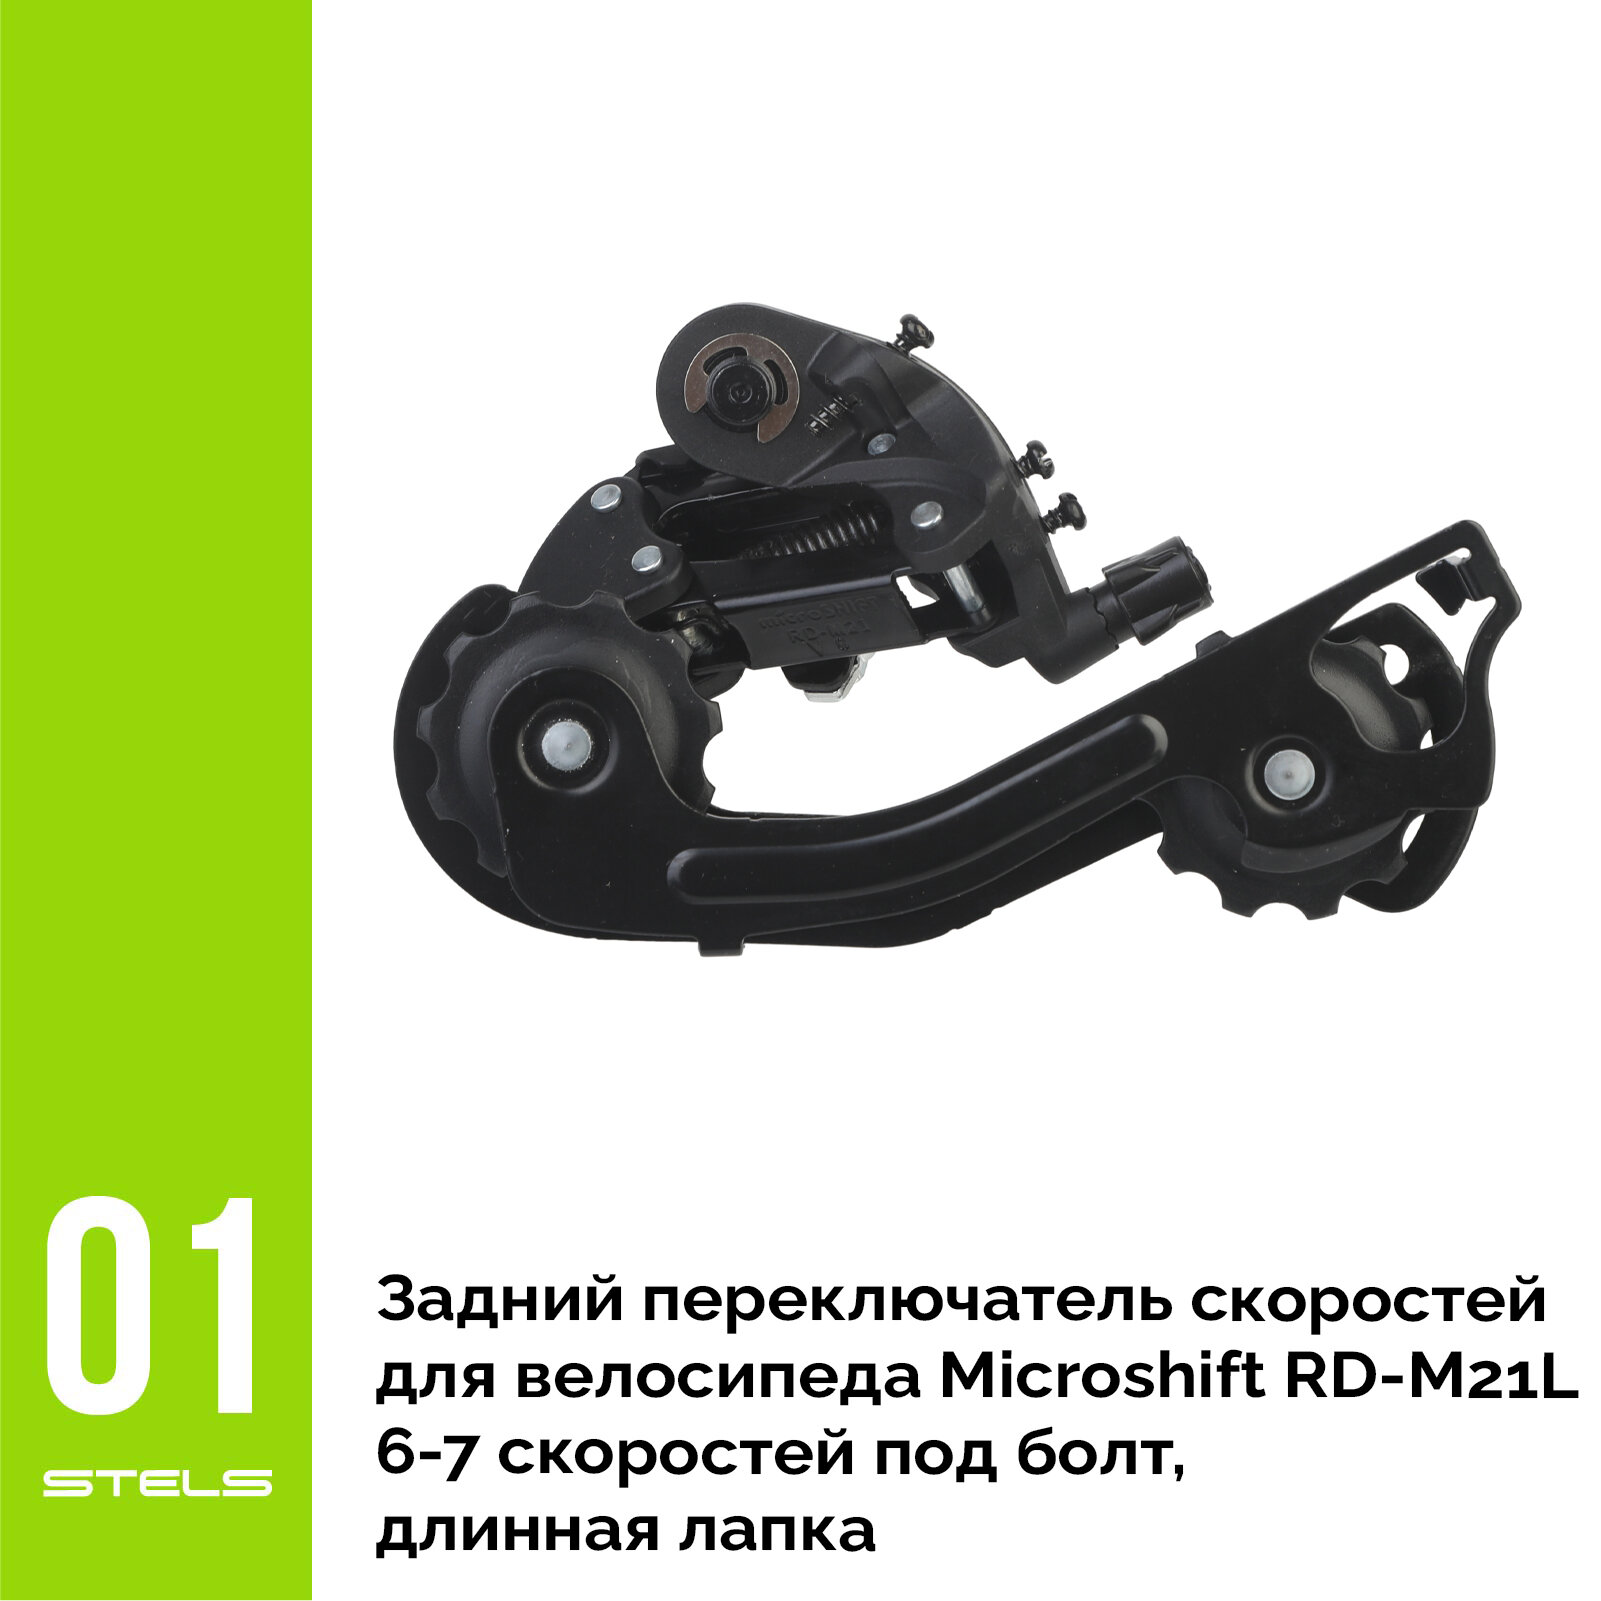 Задний переключатель скоростей для велосипеда Microshift RD-M21L 6-7 скоростей под болт, длинная лапка HIT+